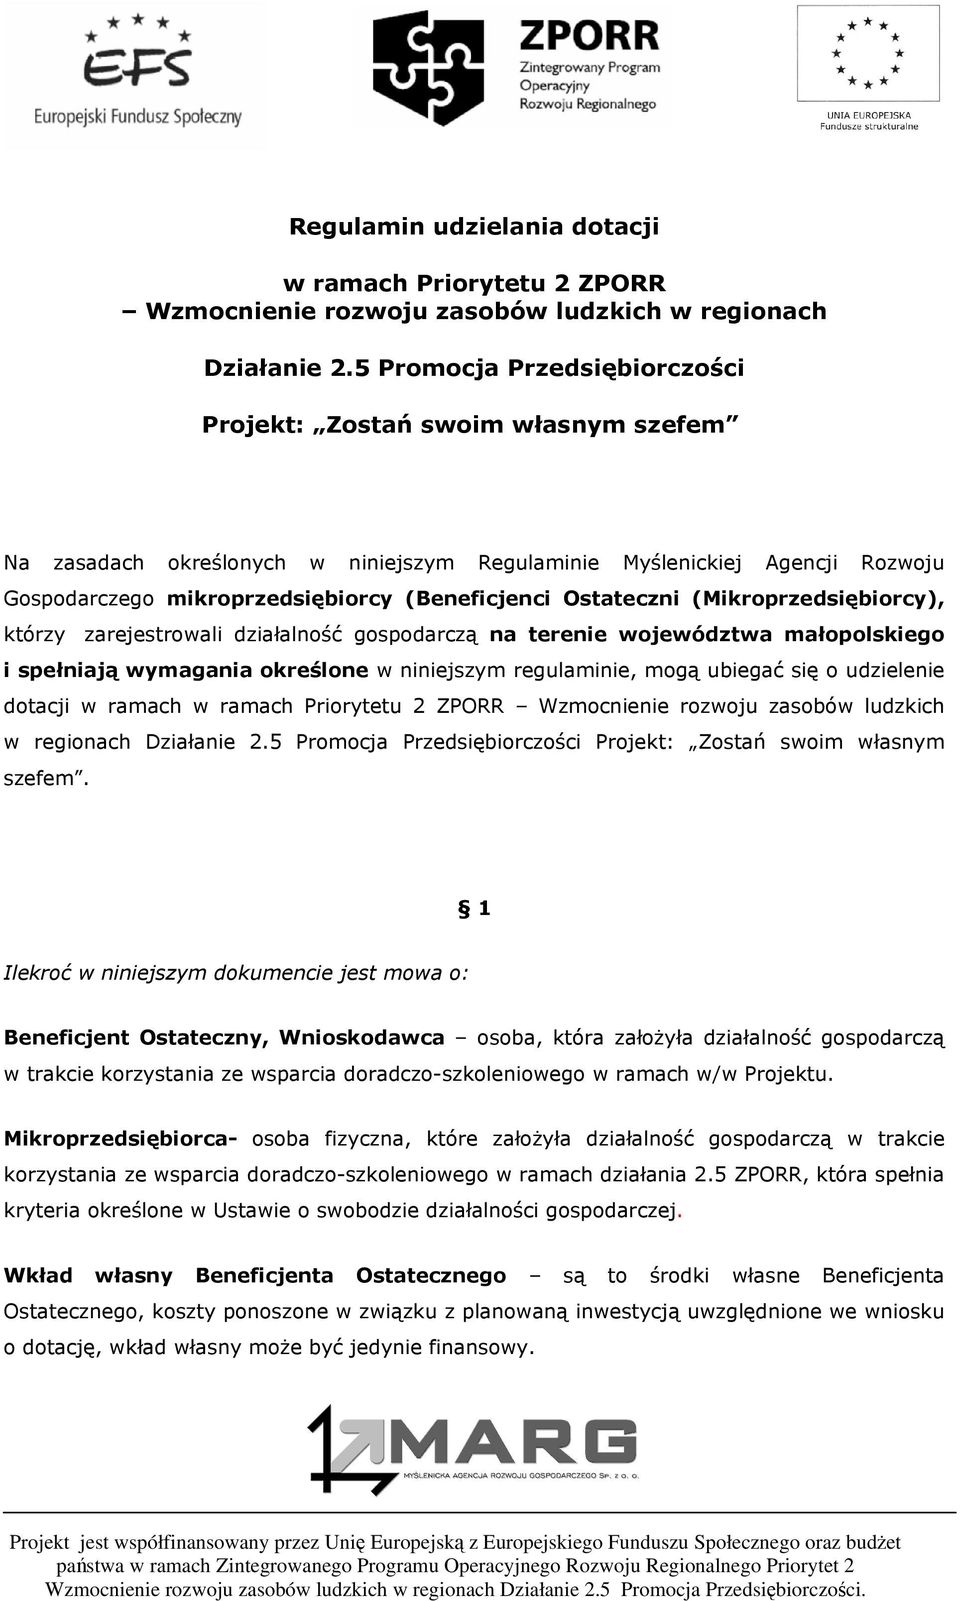 Ostateczni (Mikroprzedsiębiorcy), którzy zarejestrowali działalność gospodarczą na terenie województwa małopolskiego i spełniają wymagania określone w niniejszym regulaminie, mogą ubiegać się o